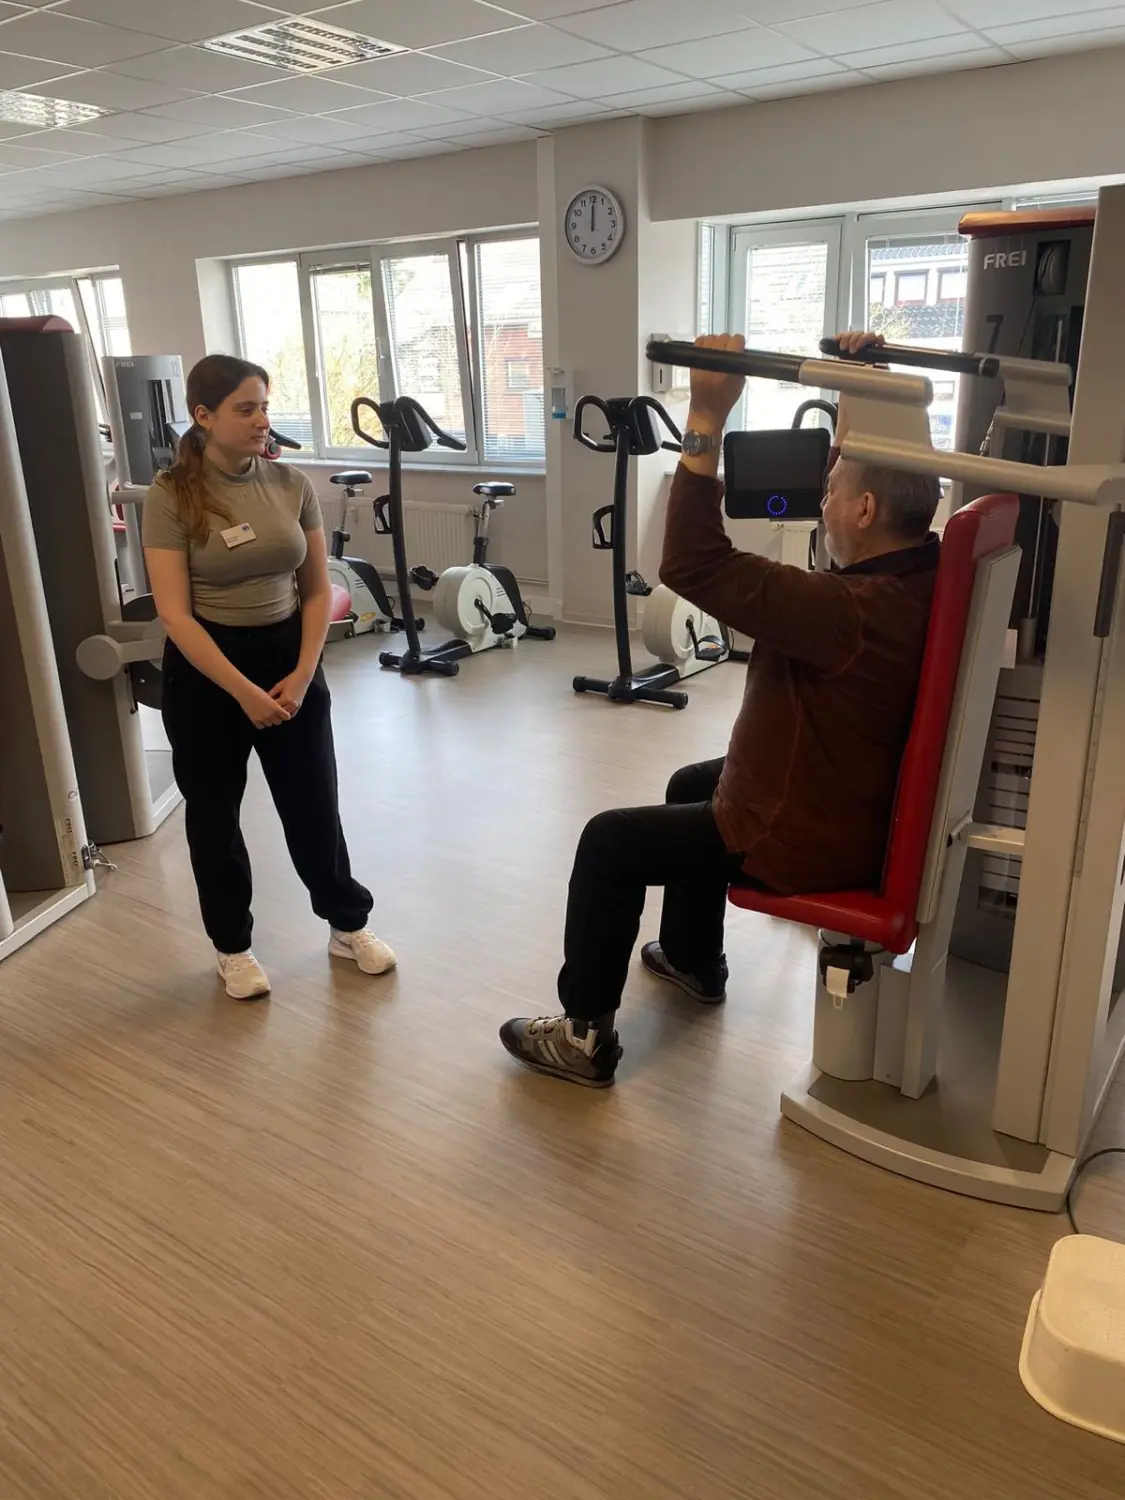 Trainingsbereic von Praxis für Physiotherapie - Anke Rautenhaus-Rodewald